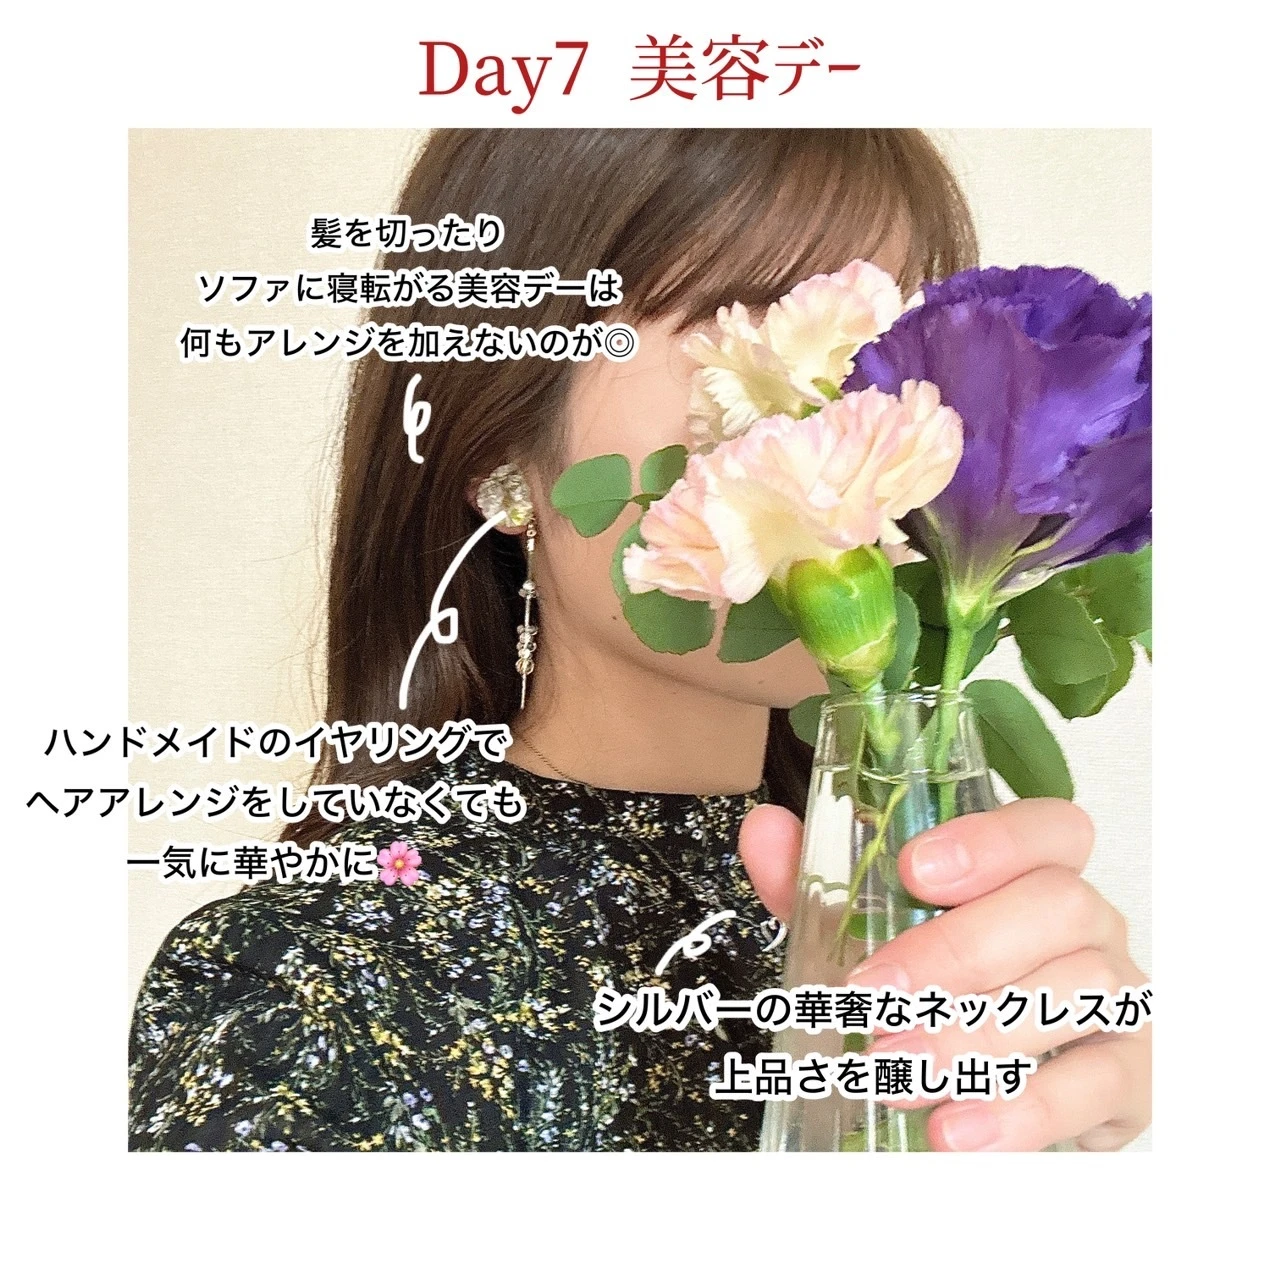 【Day7】美容デー　顔周りのポイント紹介画像